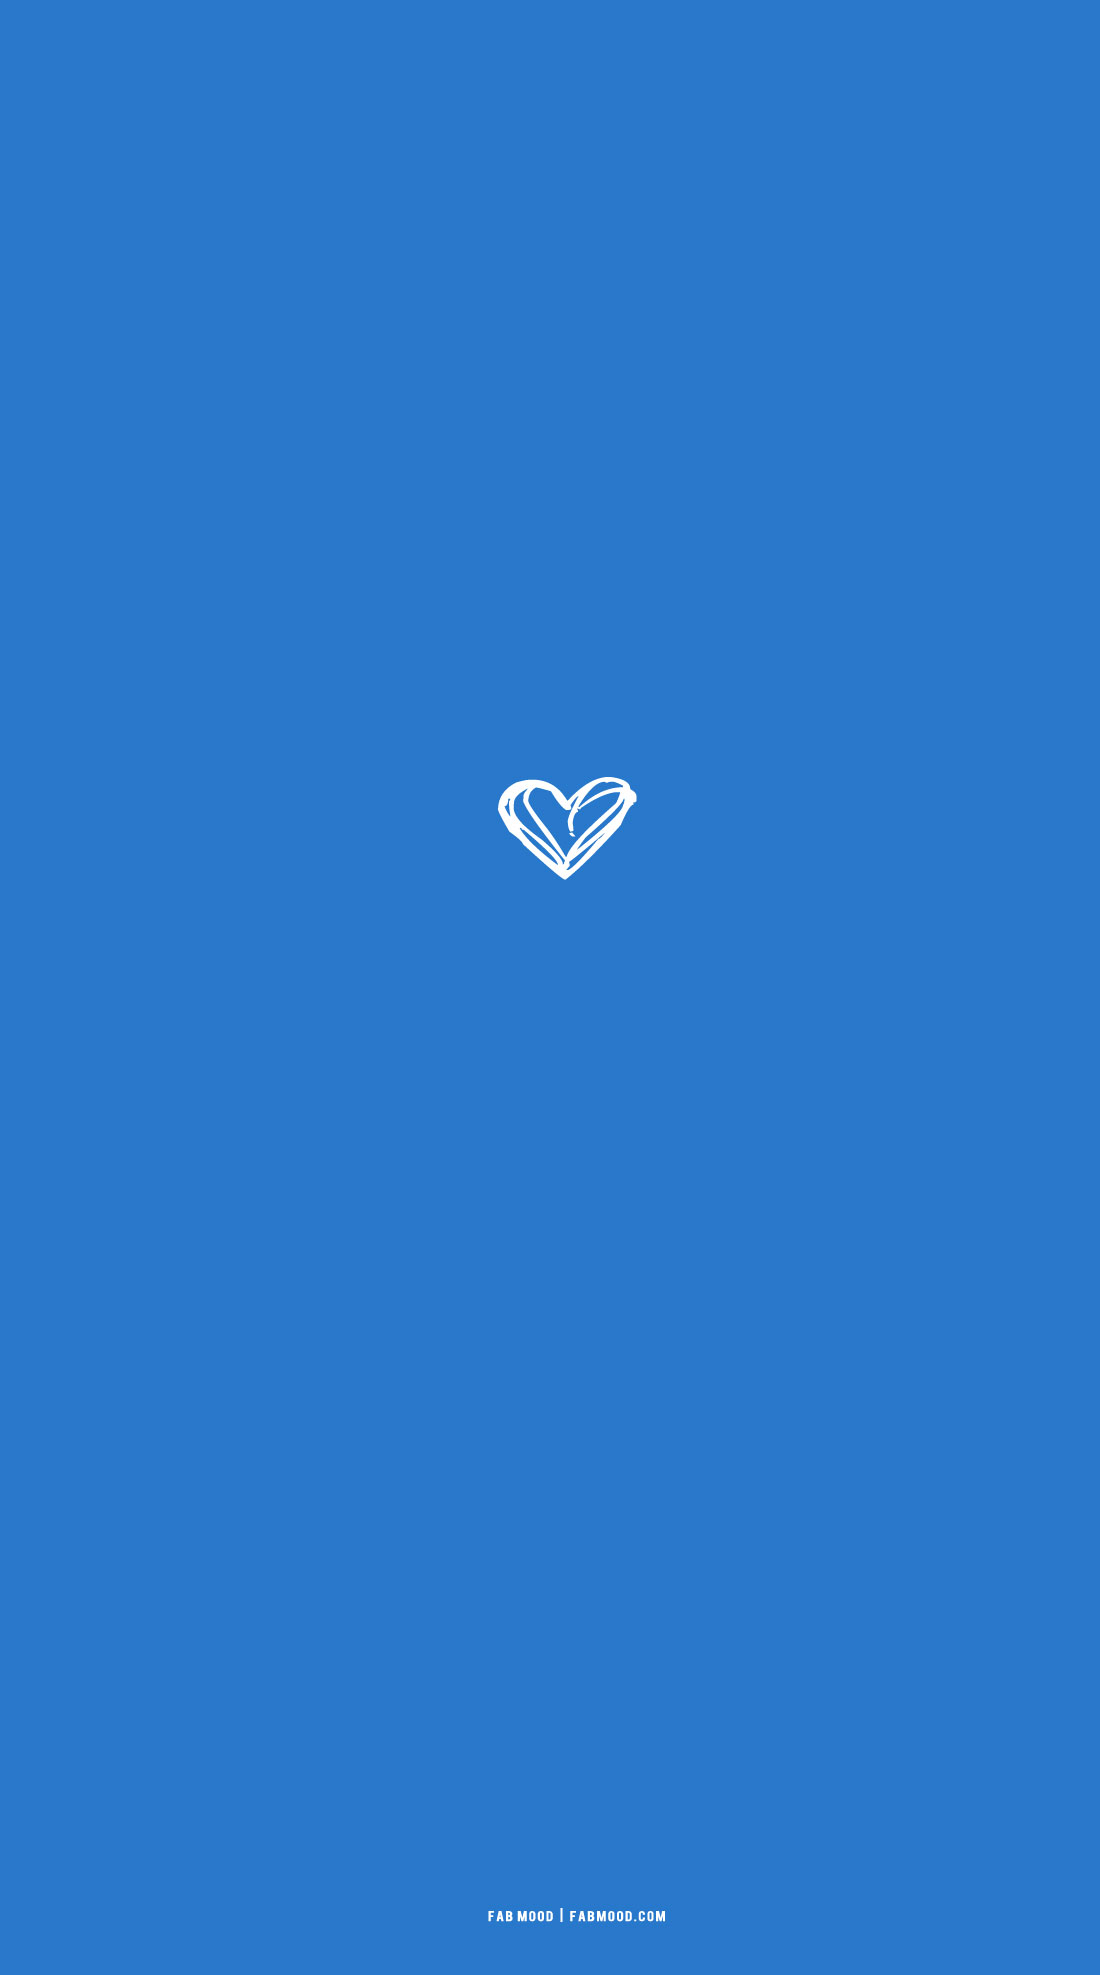 Azure Blue Wallpaper For Phone, Messy Heart Illustration